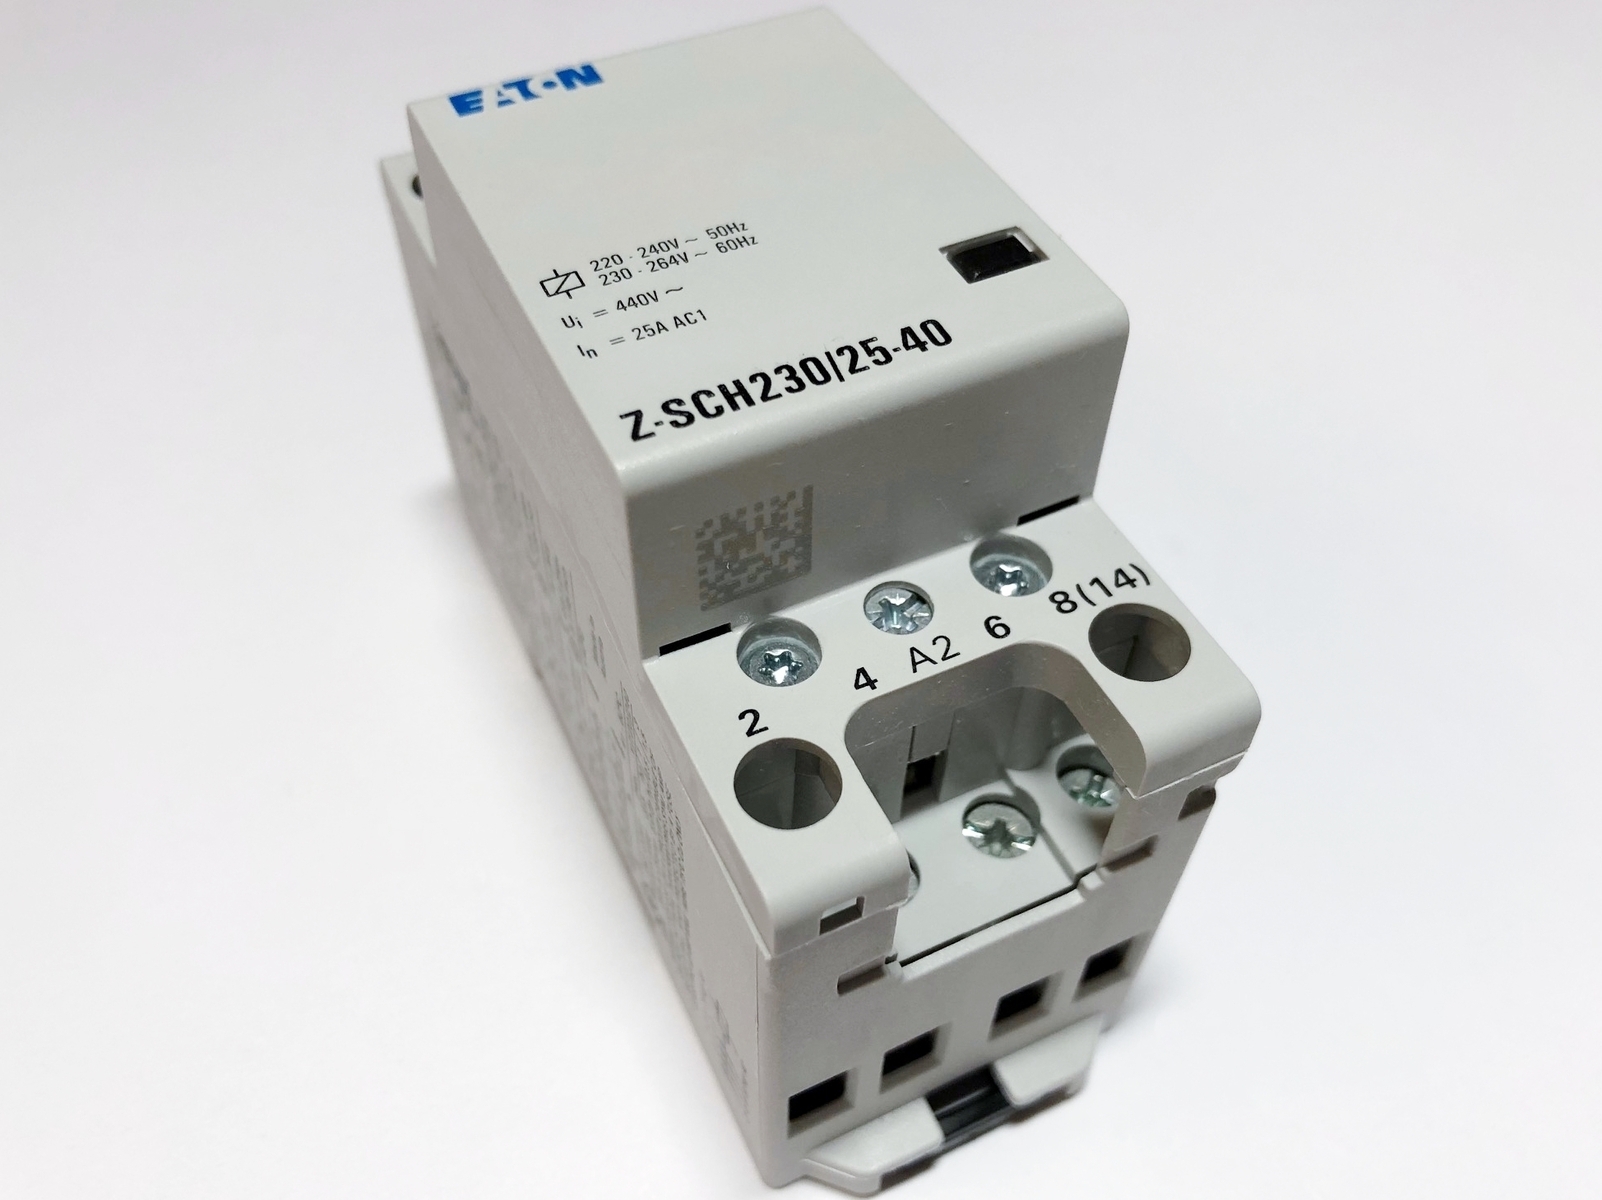 Модульный контактор 3-фазный 25A(17кВт) - 10€, Z-SCH230/25-40, Eaton .